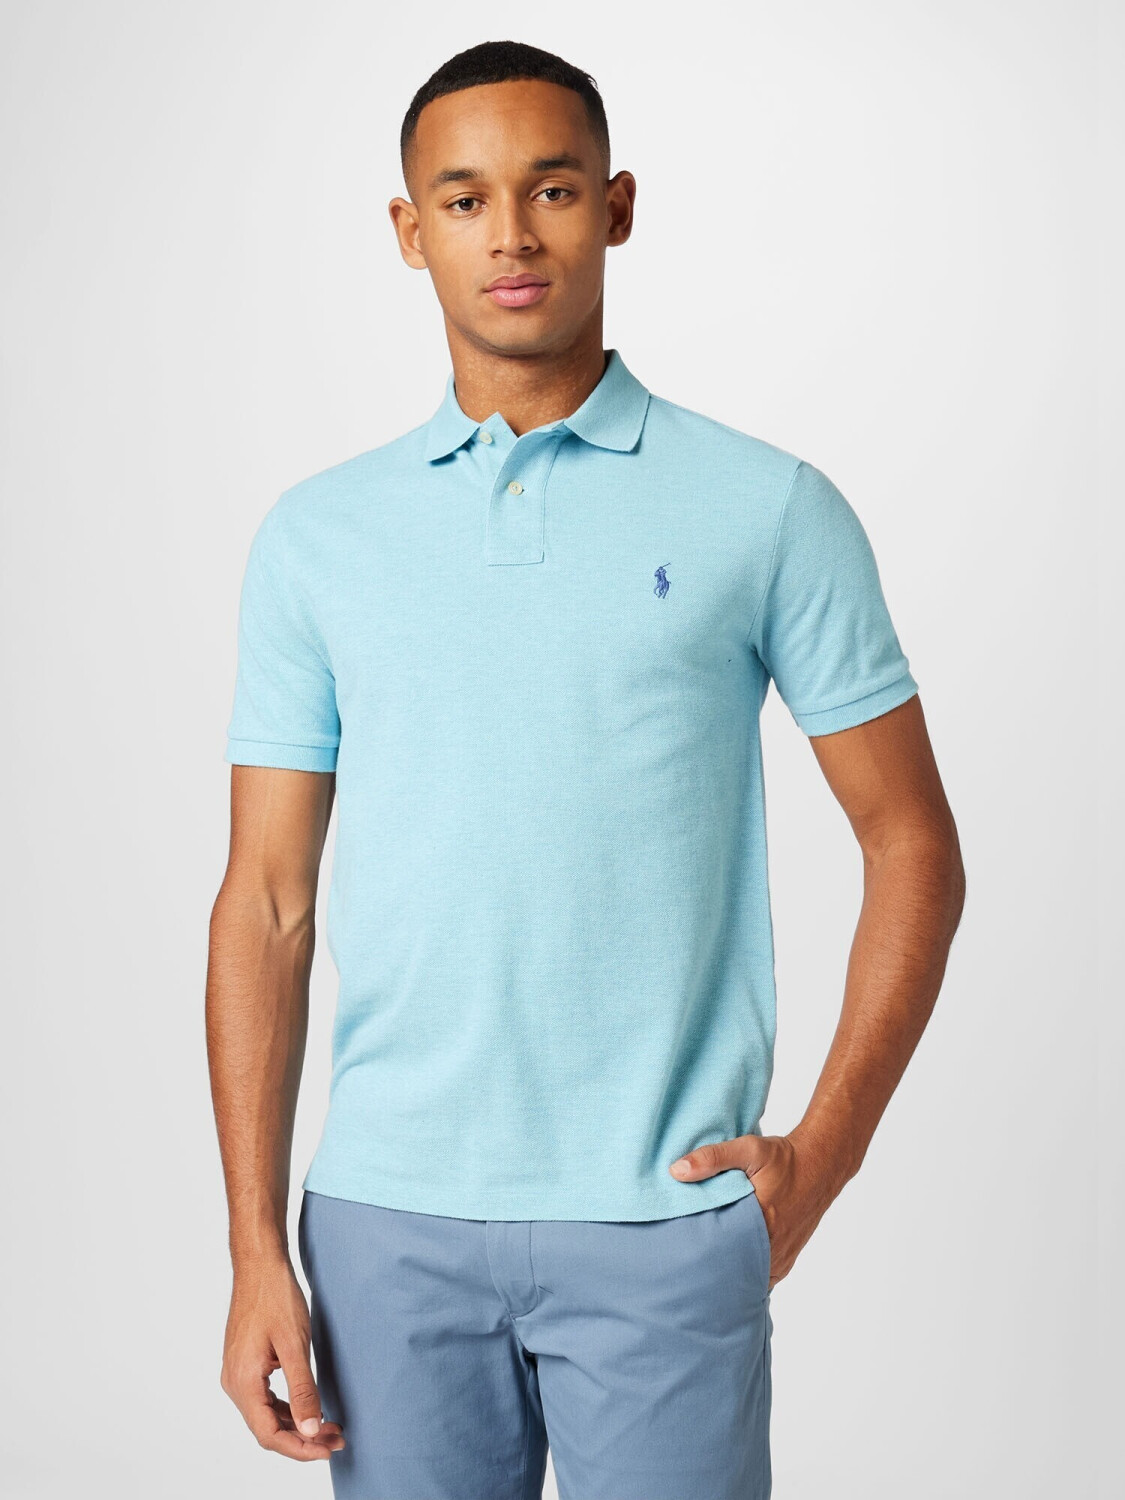 Polo Ralph Lauren Poloshirt (710536856) aqua blue ab € 119,99 |  Preisvergleich bei